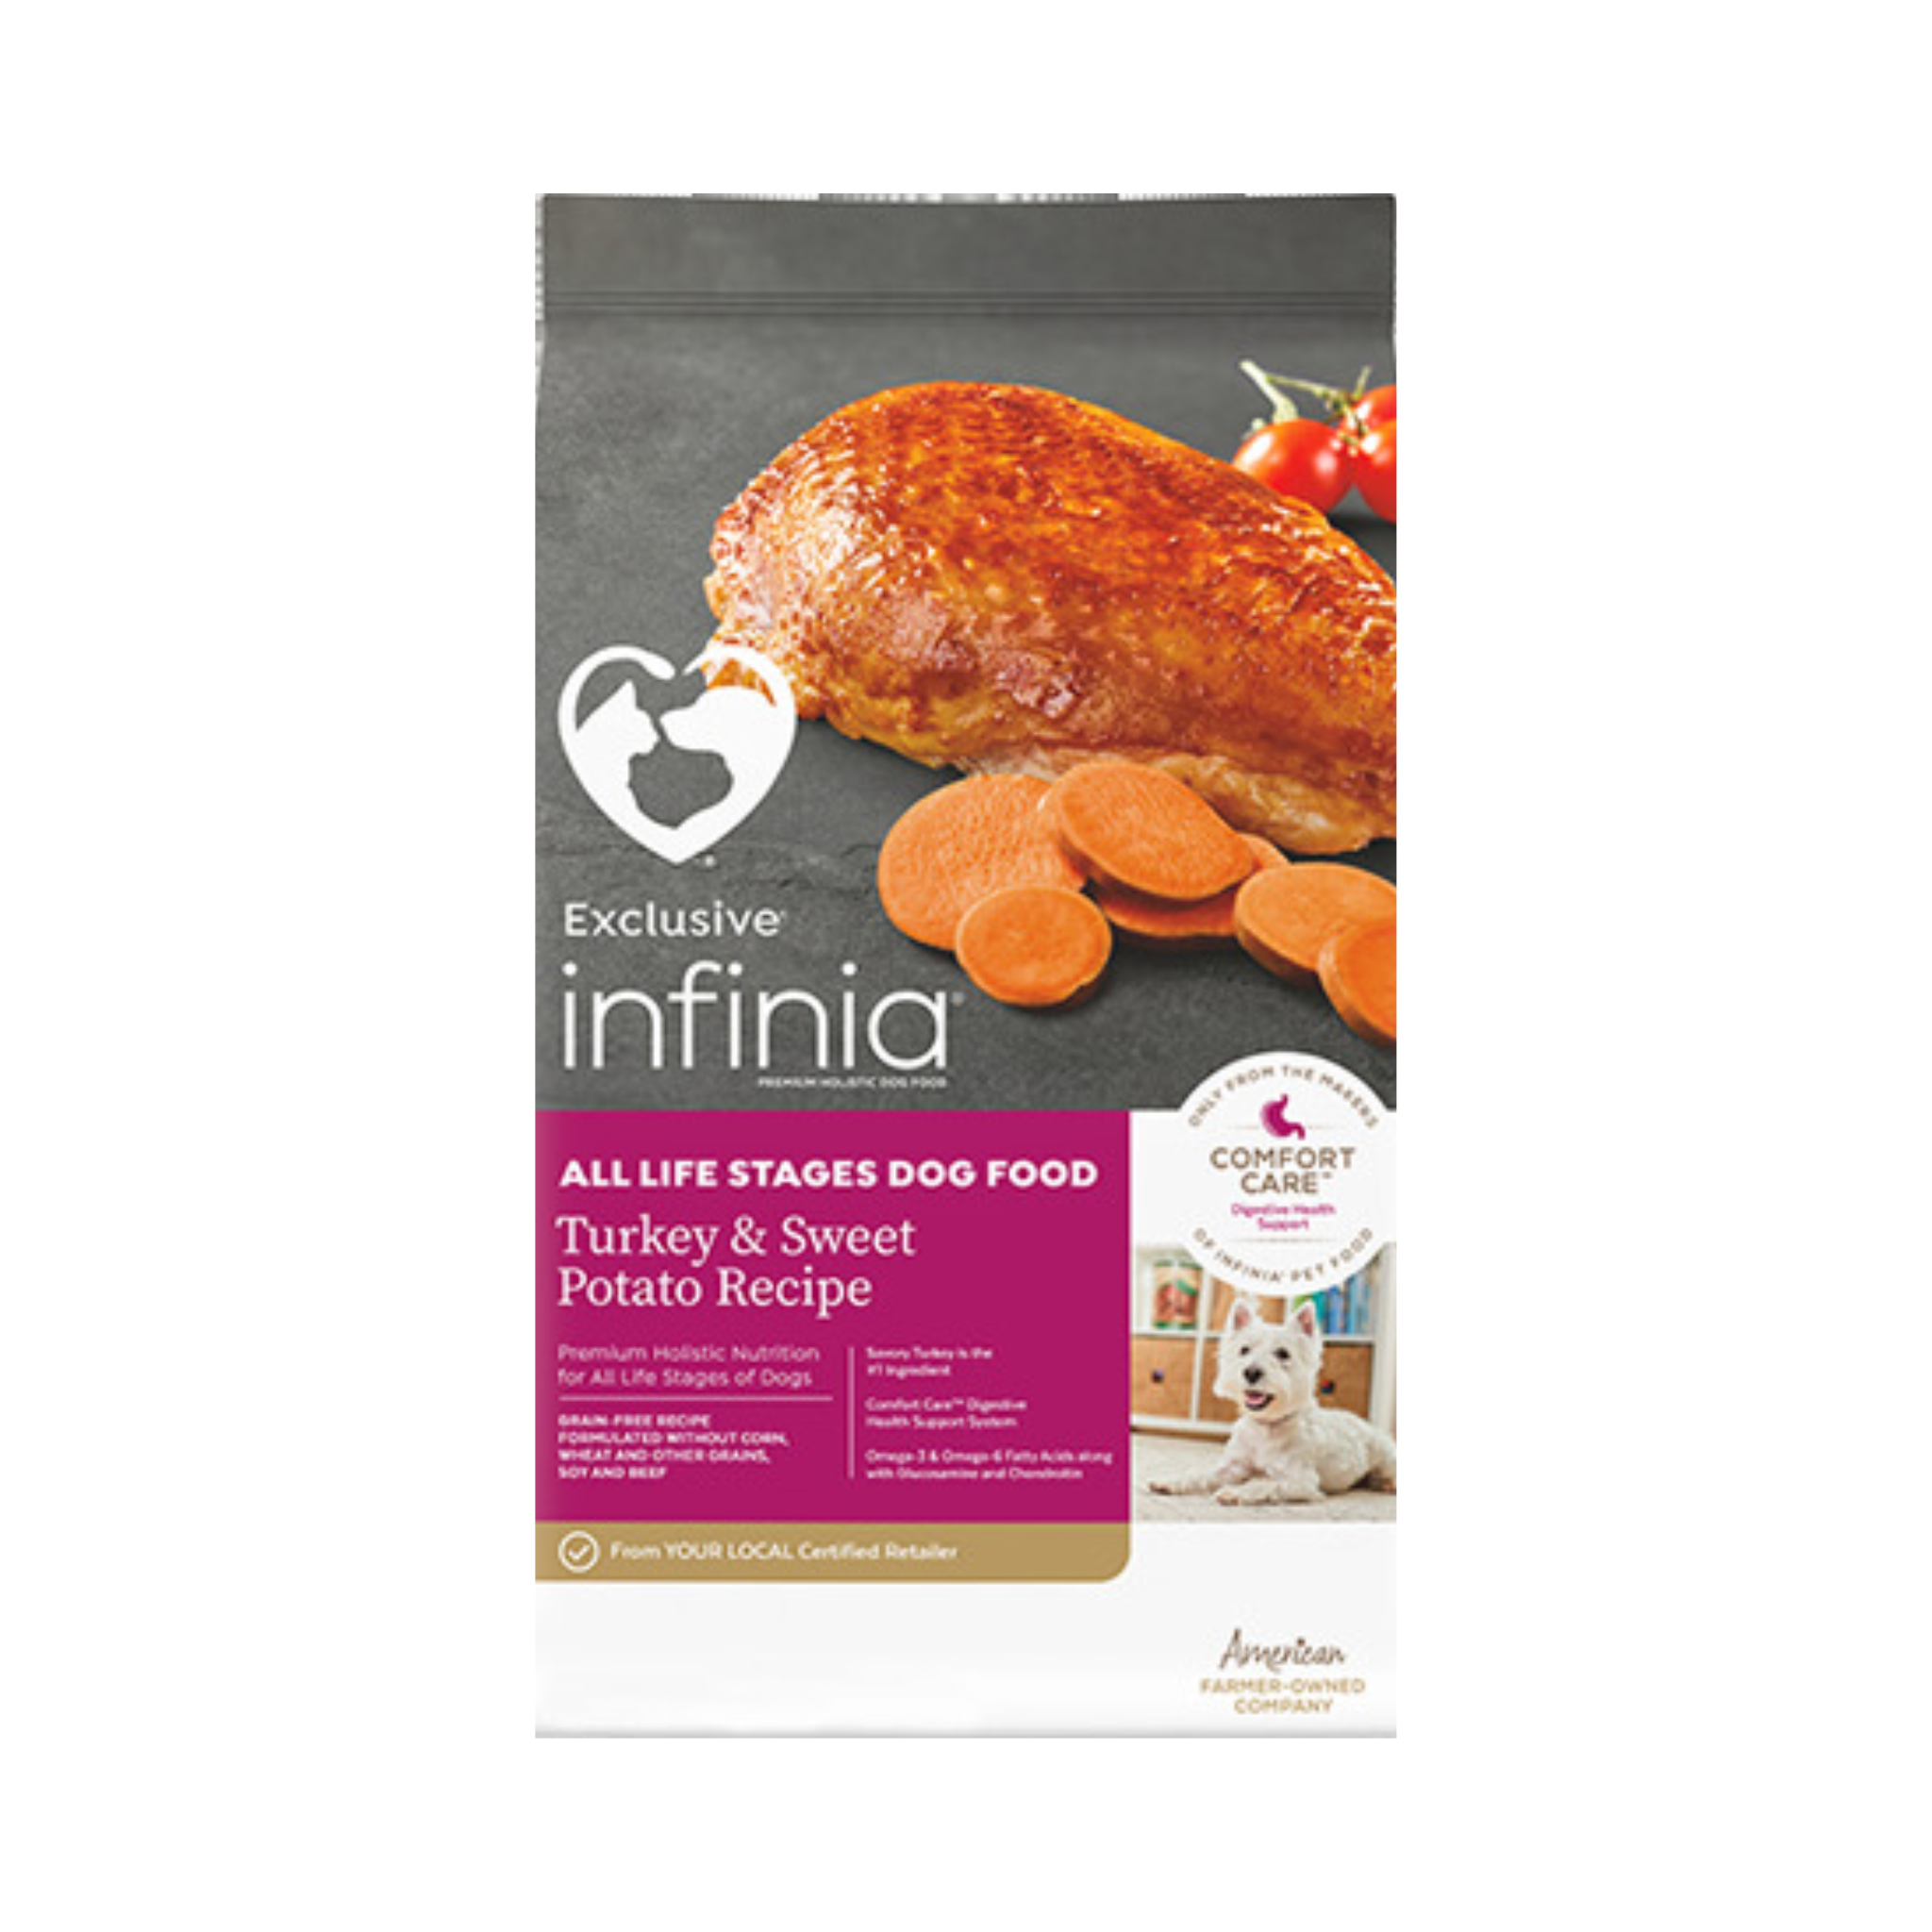 Infinia Turkey & Sweet Potato